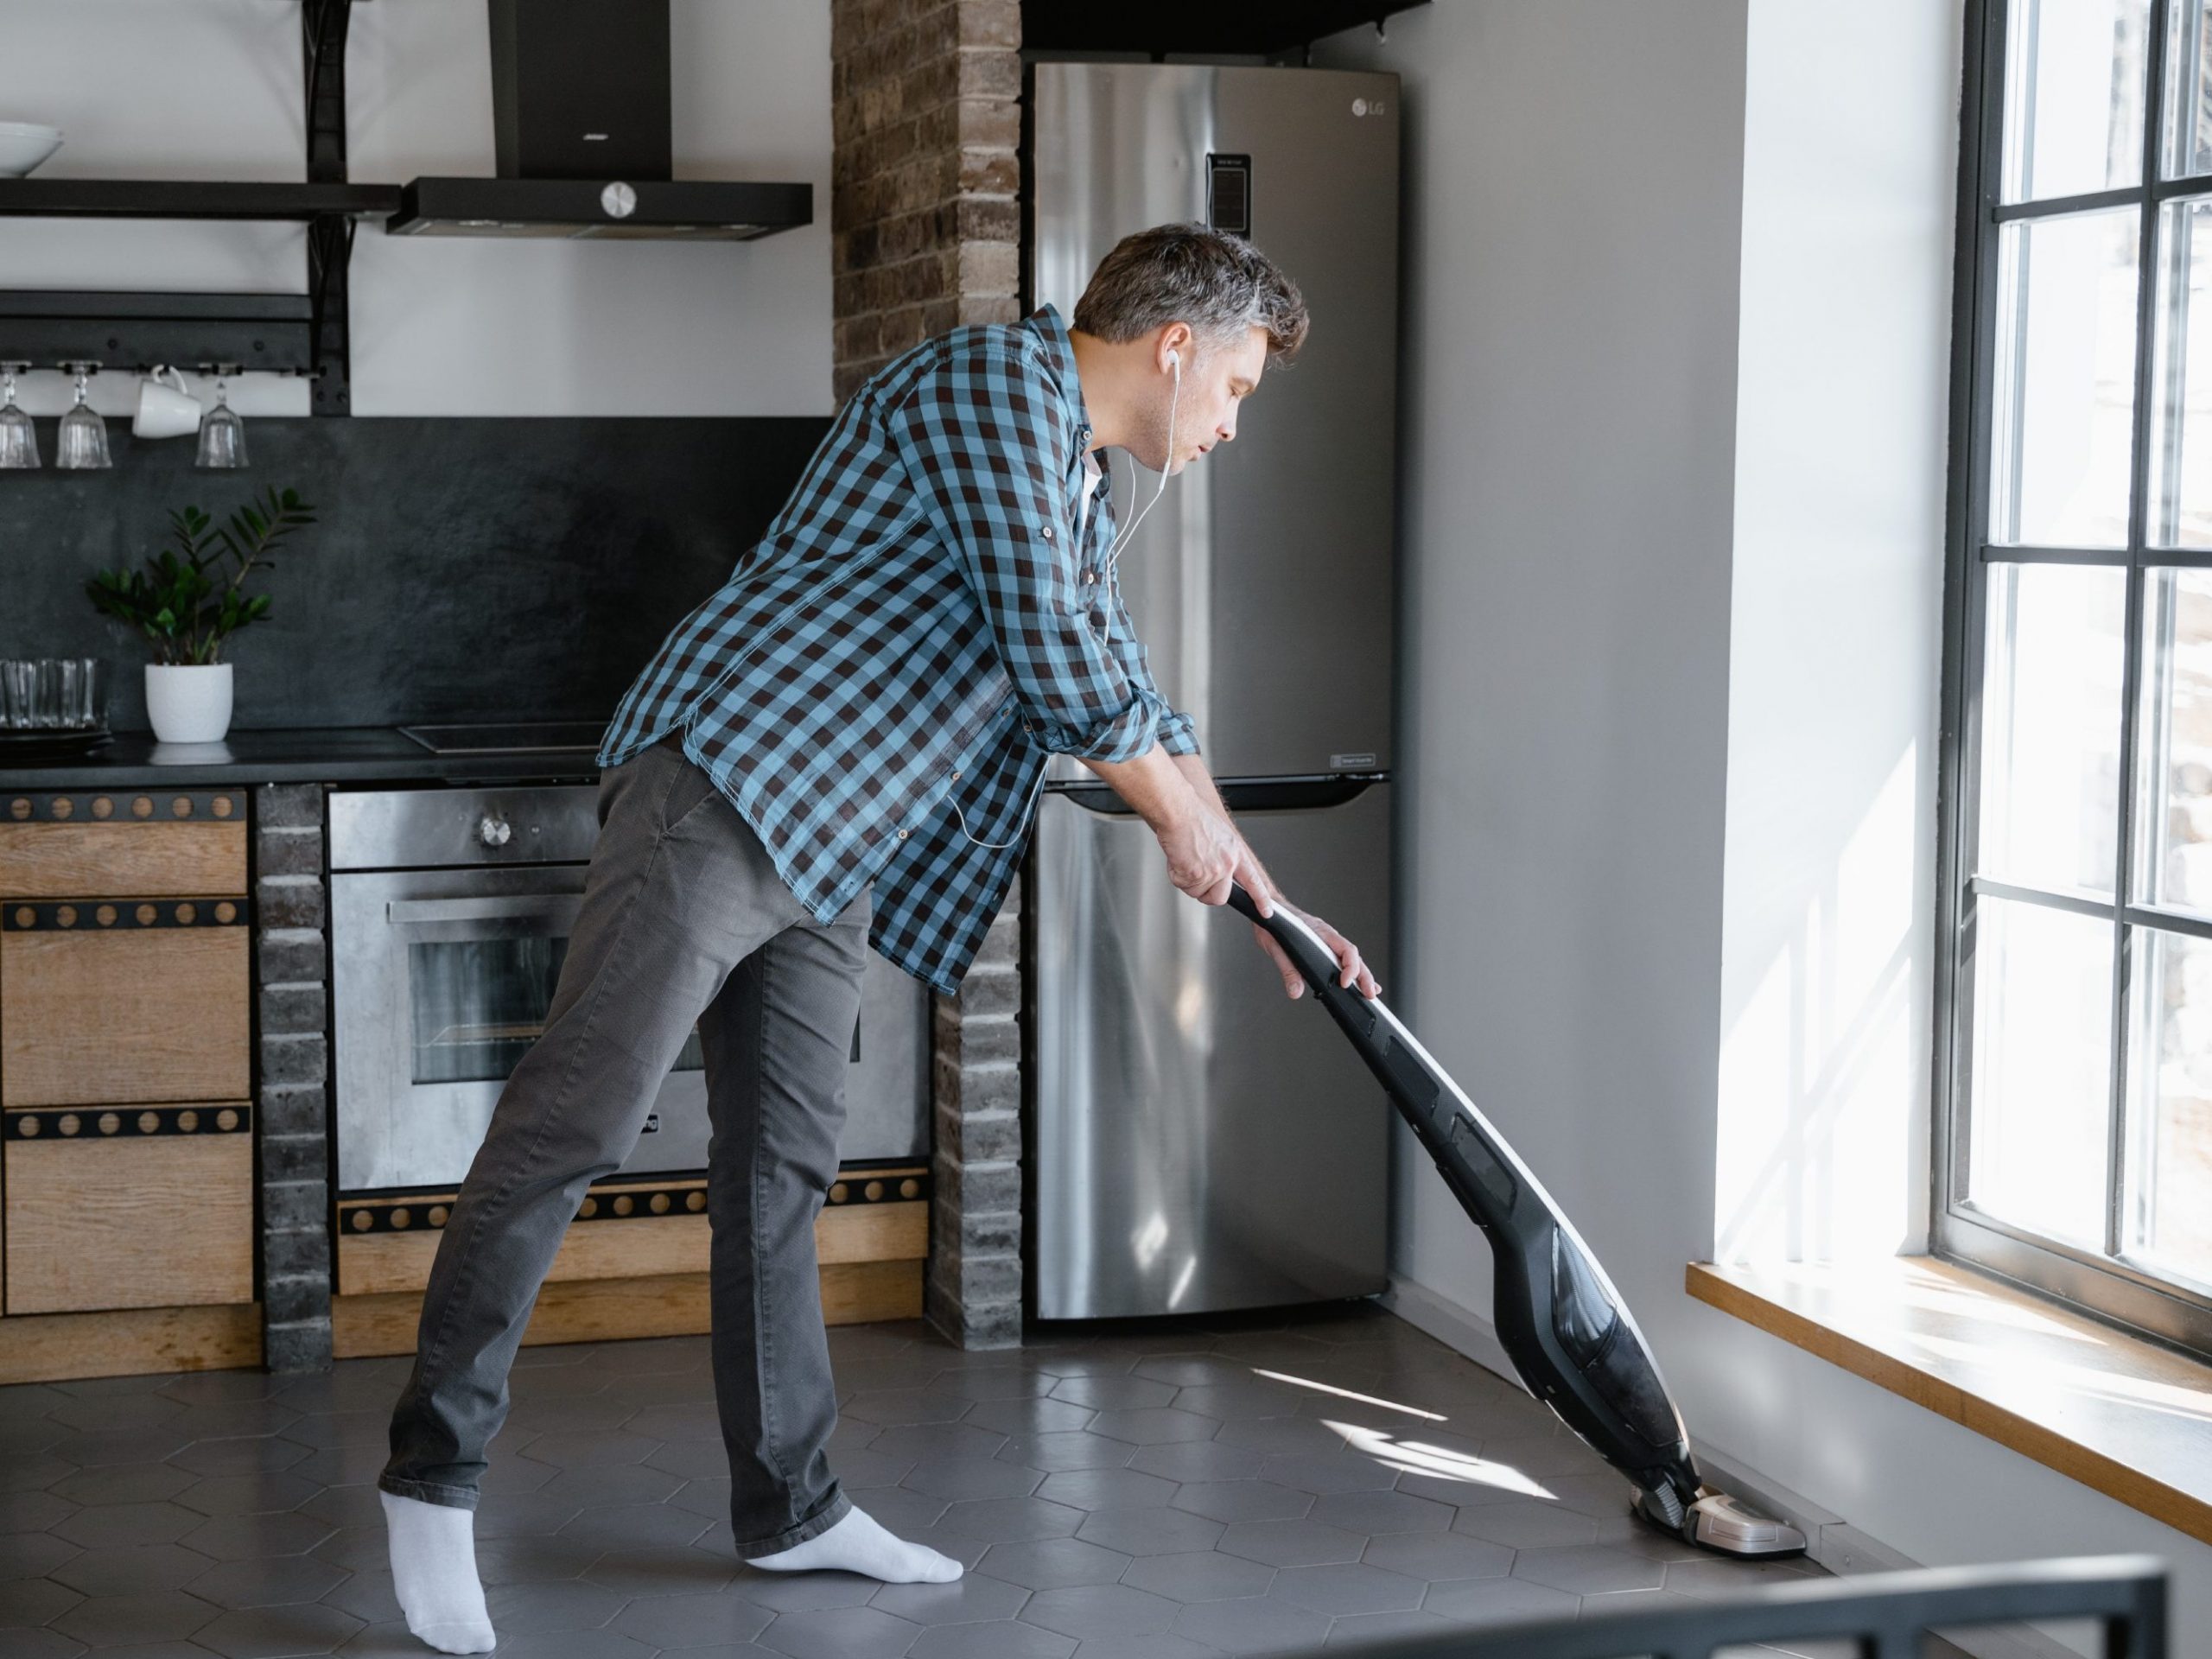 Ventajas de tener una aspiradora en tu hogar: Limpieza impecable y tiempo ahorrado